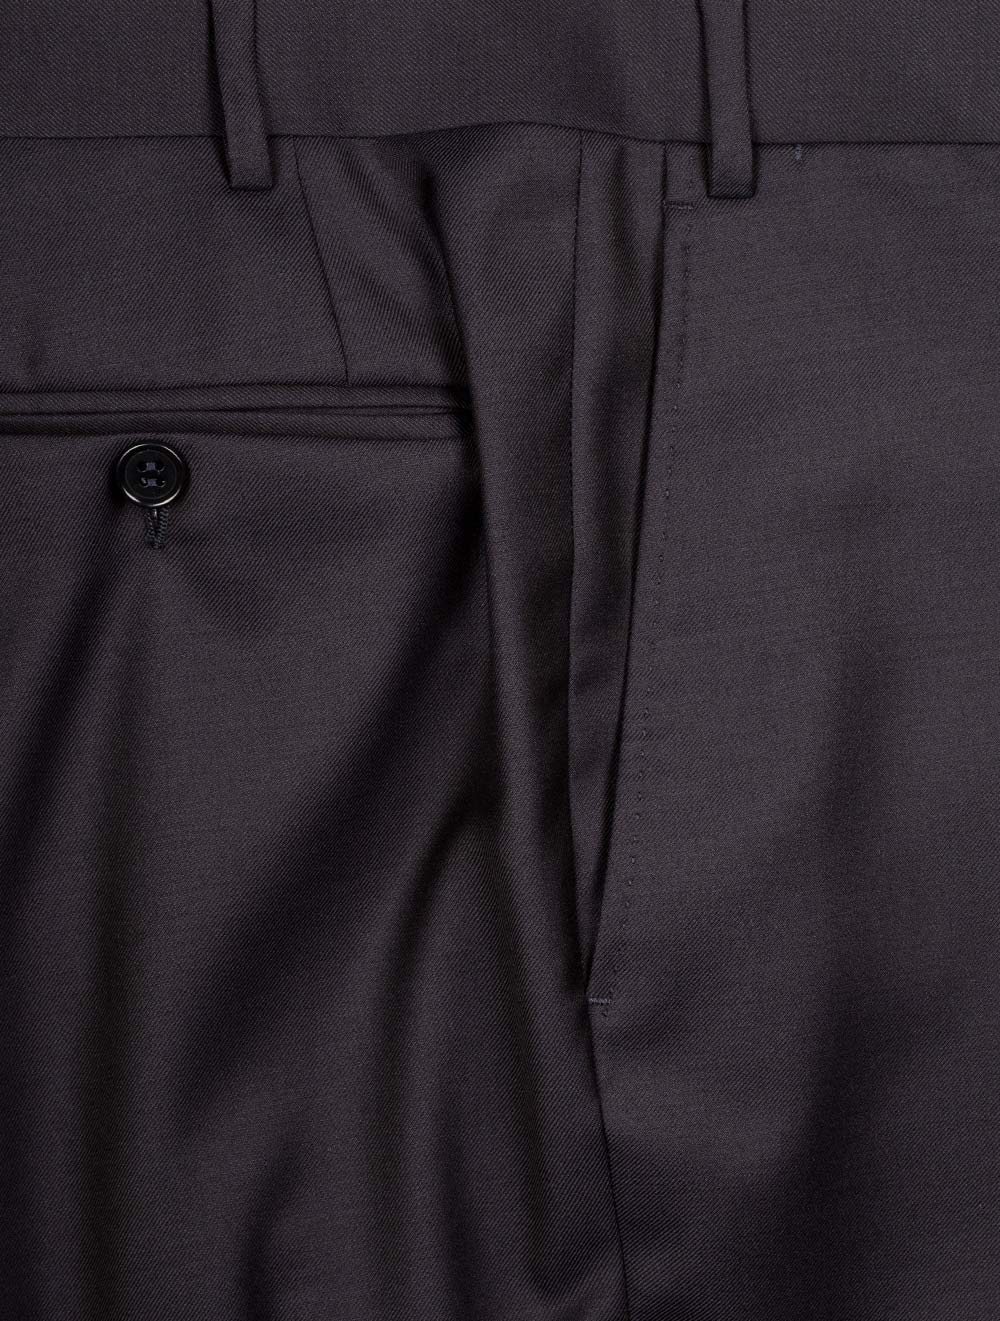 Canali Classic Suit Navy 2 Piece 2 Button Notch Lapel Soft Shoulder Flap Pockets 7